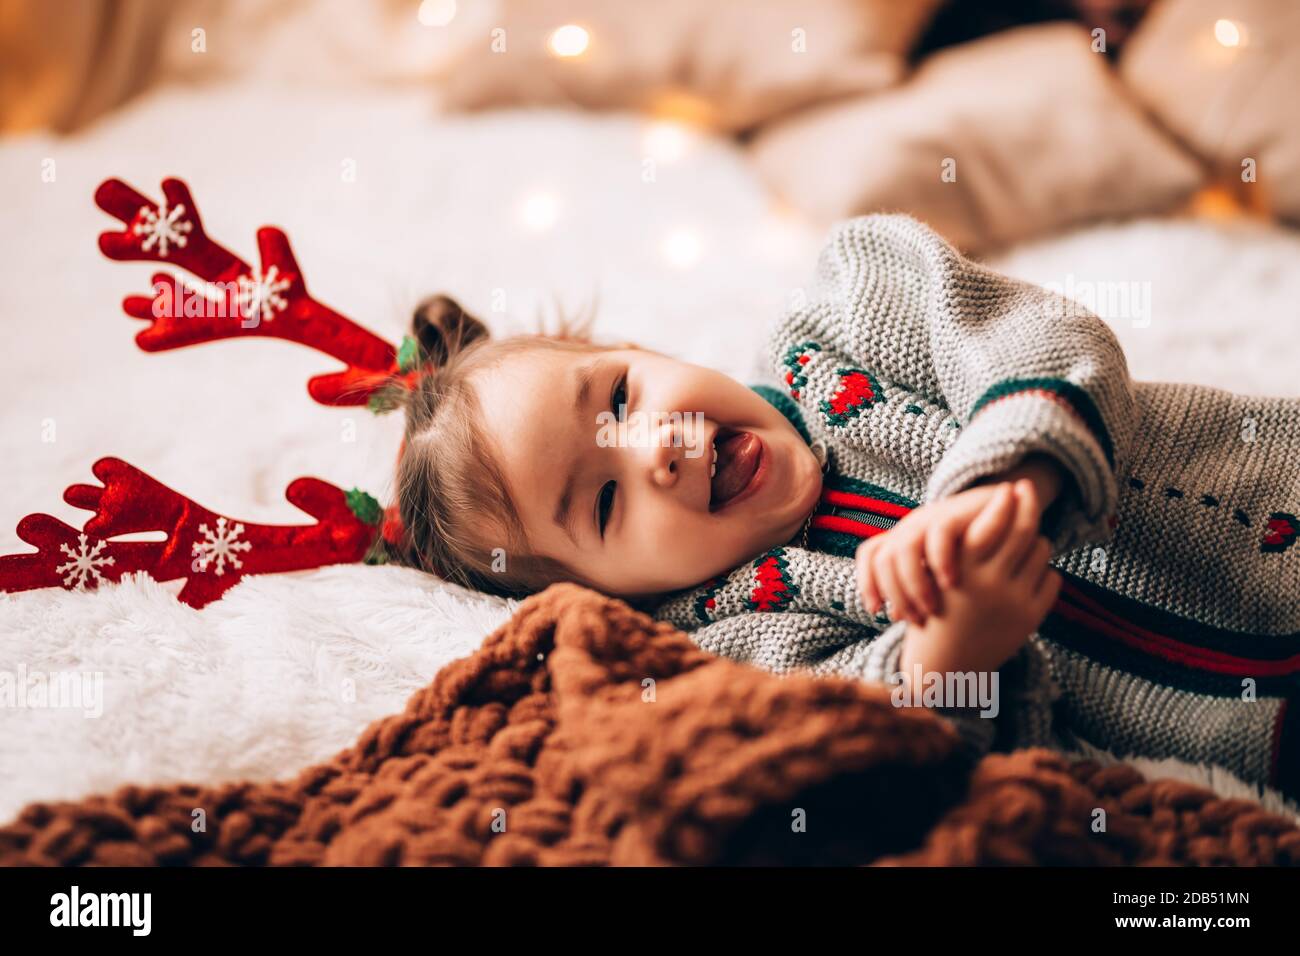 Petite fille couchée sur un grand lit. L'enfant a des bois sur sa tête. Ambiance de Noël. Banque D'Images